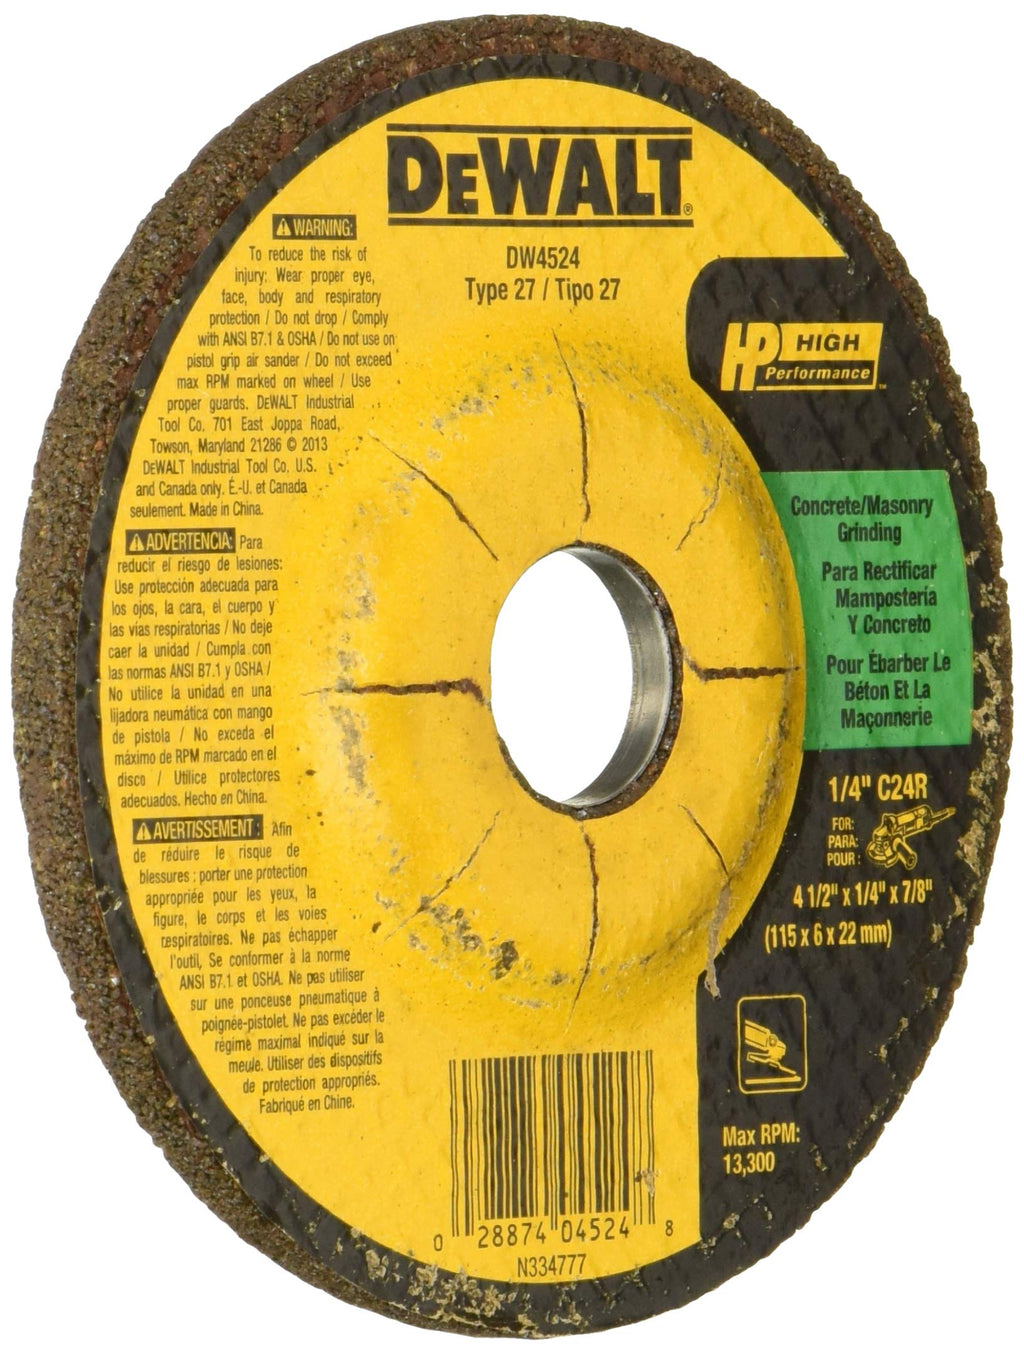 DEWALT DW4524 4-1/2-Inch by 1/4-Inch by 7/8-Inch Concrete/Masonry Grinding Wheel - NewNest Australia